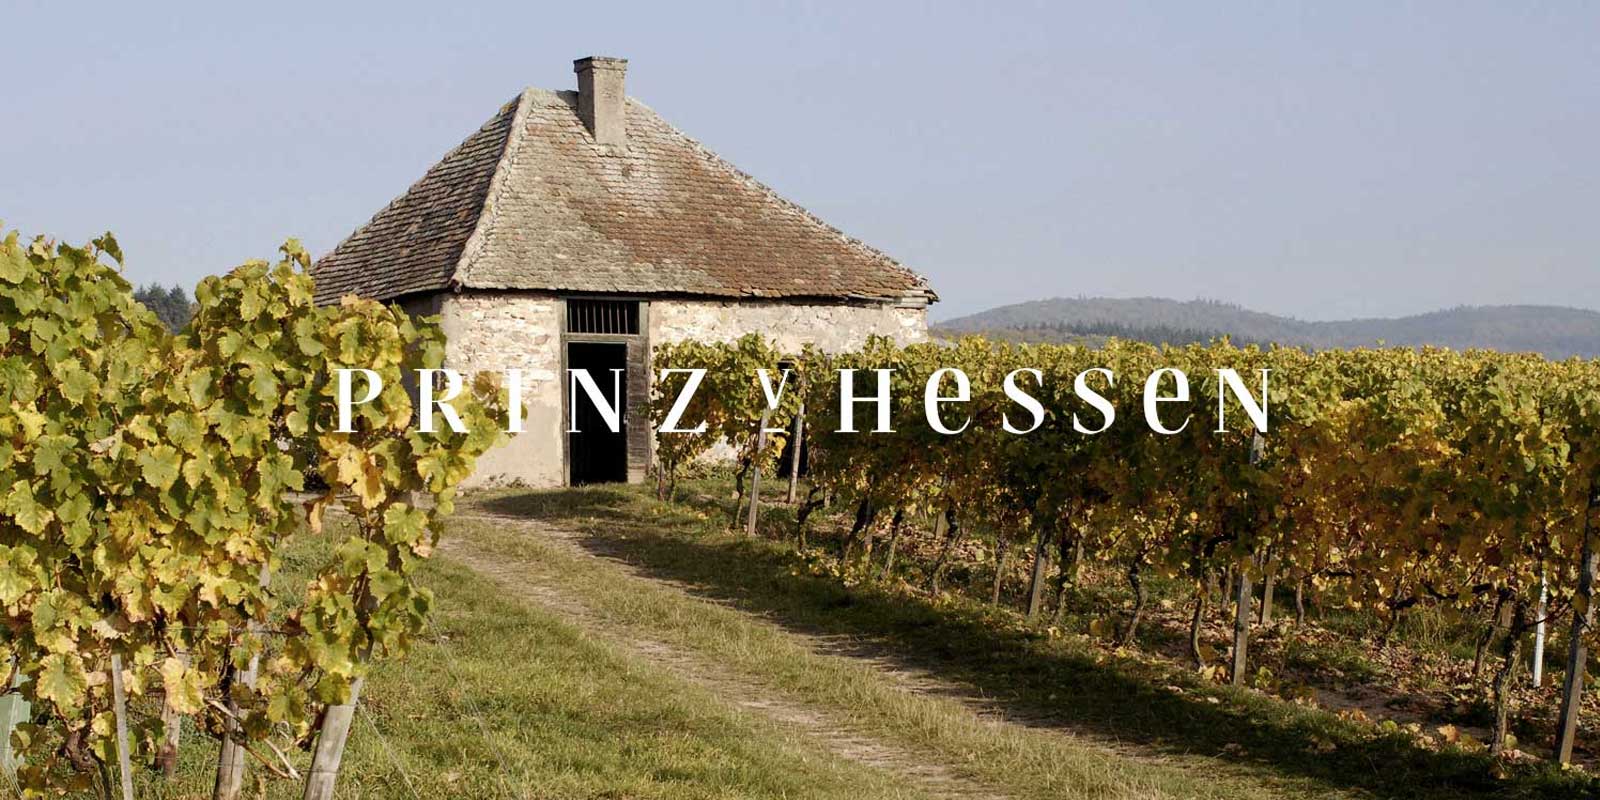 Prince of Hesse vingard - Rheingau vinregion Vingarden PRINZ VON HESSEN i Johannisberg i Rheingau ar en av de framstaende rieslingproducenterna i Tyskland och ar en VDP-grundare av Rheingau regionala forening. Manga erkannanden hemma och utomlands speglar vingarden PRINZ VON HESSEN, som ar pa toppniva. Viner och mousserande viner fran vingarden PRINZ VON HESSEN har vunnit manga utmarkelser och fatt hoga internationella utmarkelser.